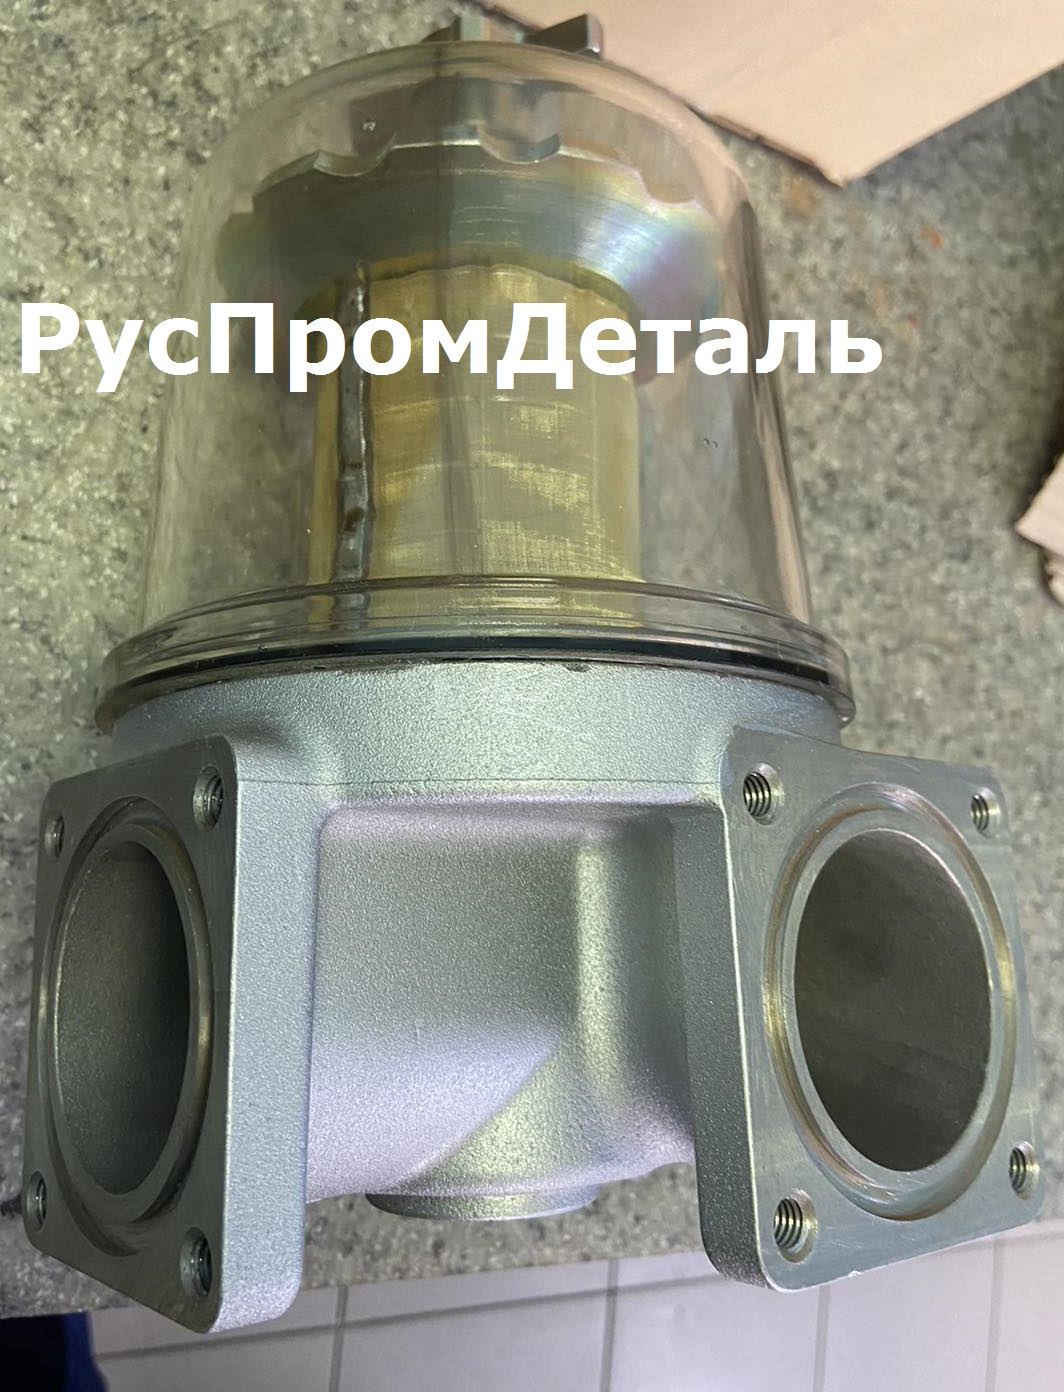 Фильтр топливный ФЦГО Ду-50, насос СШН-50/600 - фотография